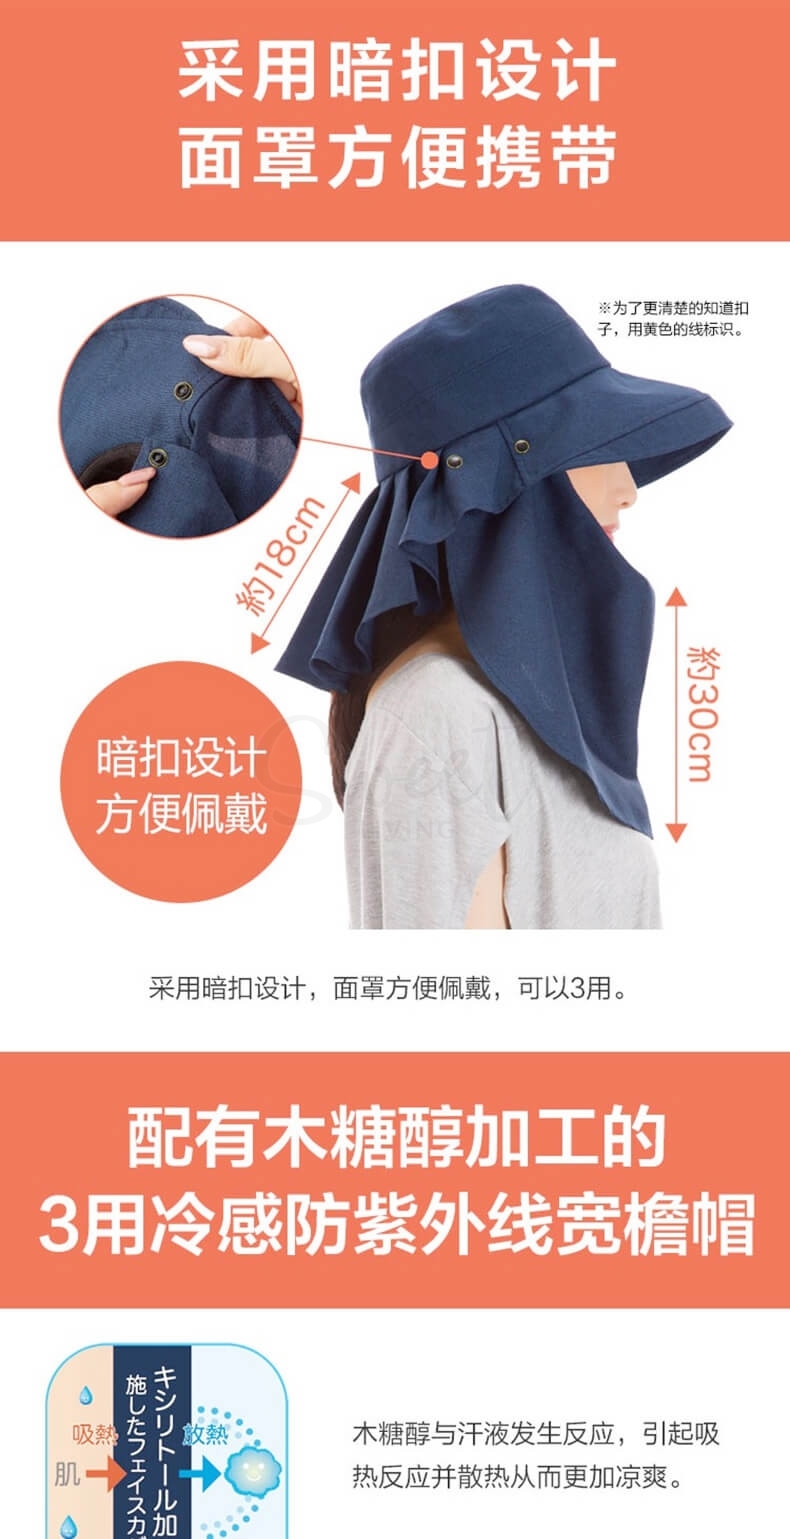 【日本 UV CUT】 可折叠 抗UV 双面可用 防晒帽遮阳帽 帽子 - @ - 24 - Sweet Living